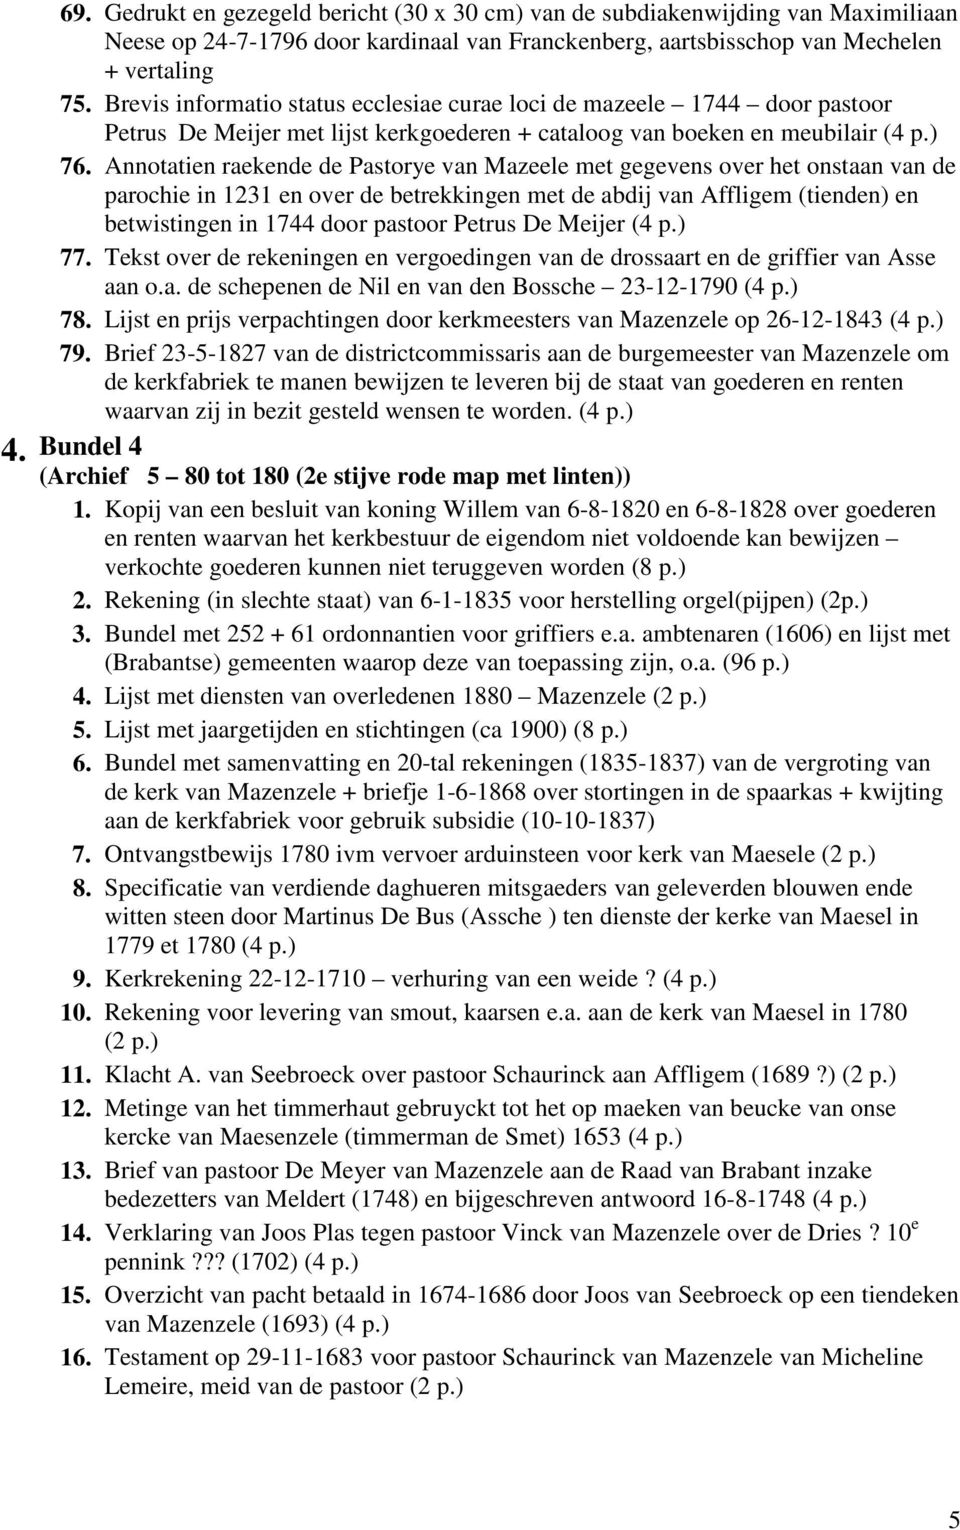 Annotatien raekende de Pastorye van Mazeele met gegevens over het onstaan van de parochie in 1231 en over de betrekkingen met de abdij van Affligem (tienden) en betwistingen in 1744 door pastoor